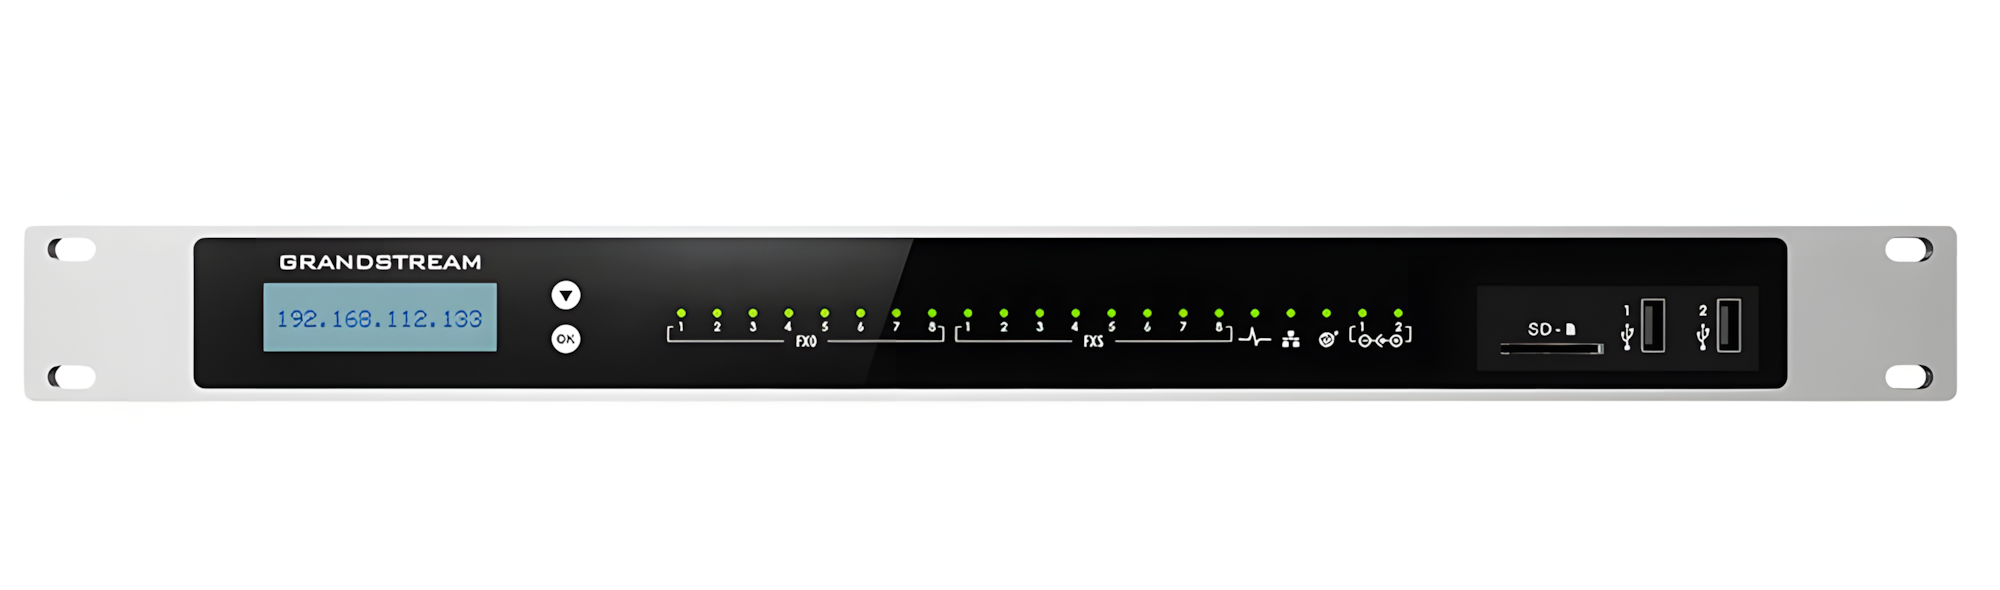 Grandstream UCM6308, Conmutador IP, 8 líneas, 3000 usuarios, 450 llamadas simultáneas